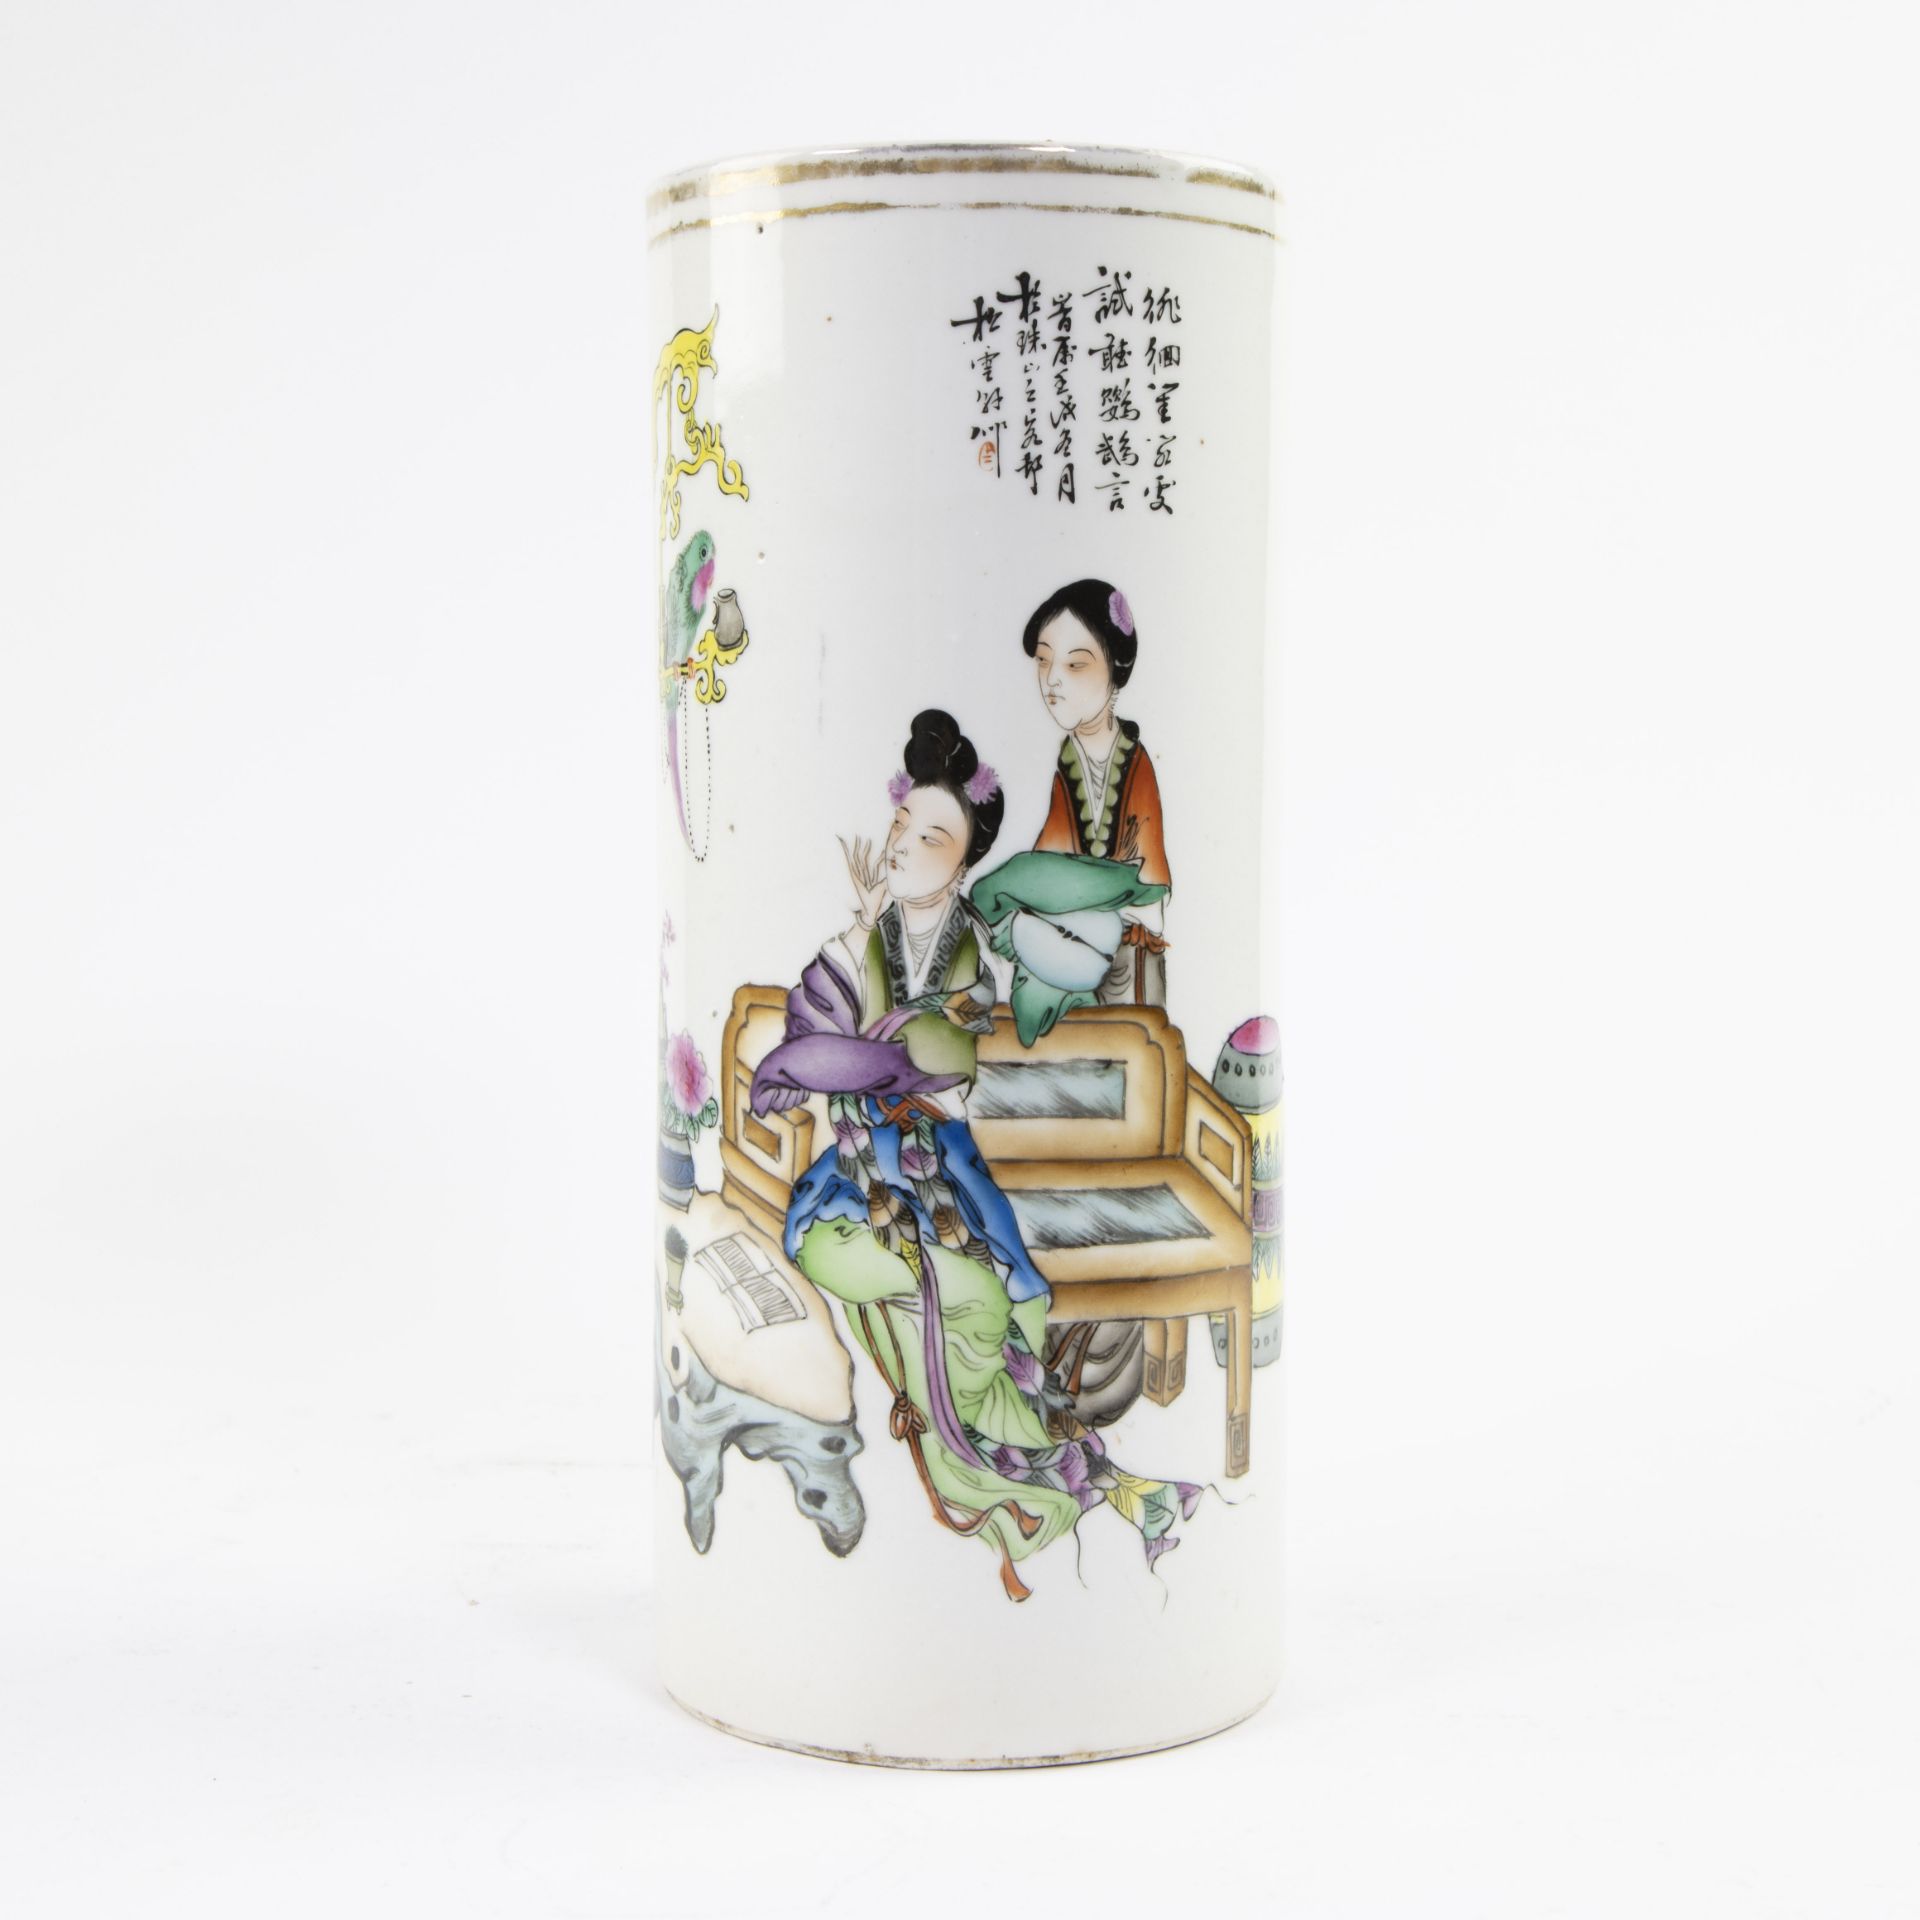 Chinese brush vase, circa 1900, marked